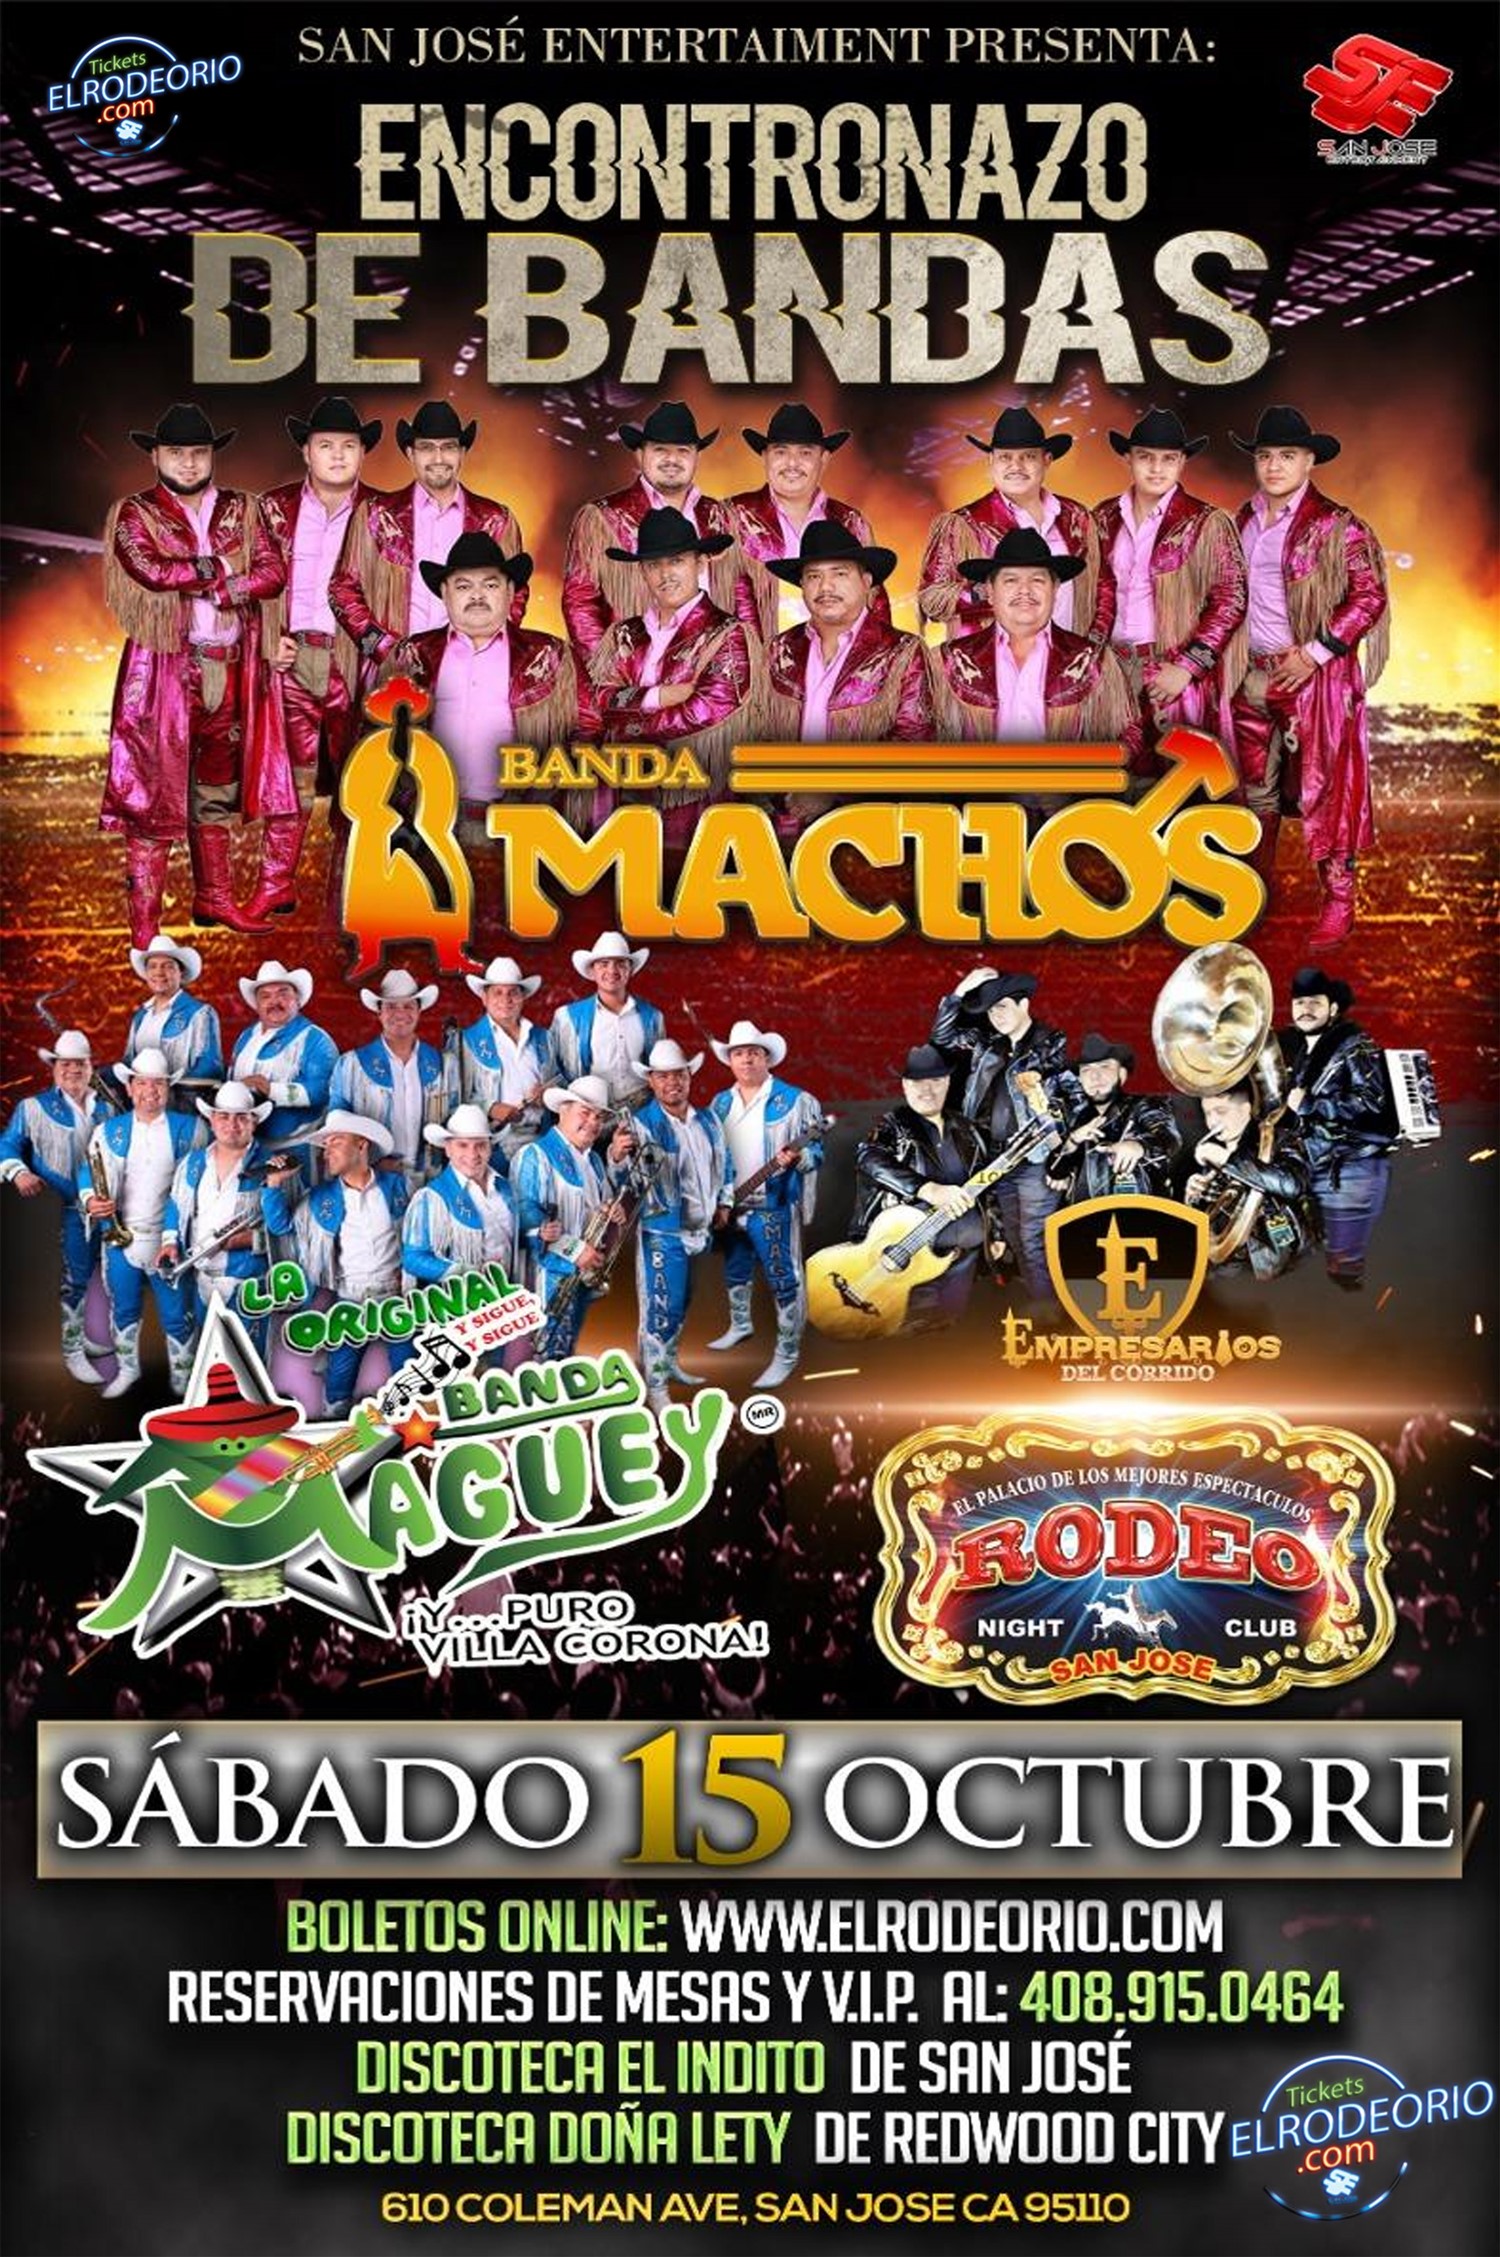 Banda Machos y Banda Maguey,Sabado 15 de Octubre,Club Rodeo  on Oct 15, 21:00@Club Rodeo - Buy tickets and Get information on elrodeorio.com sanjoseentertainment